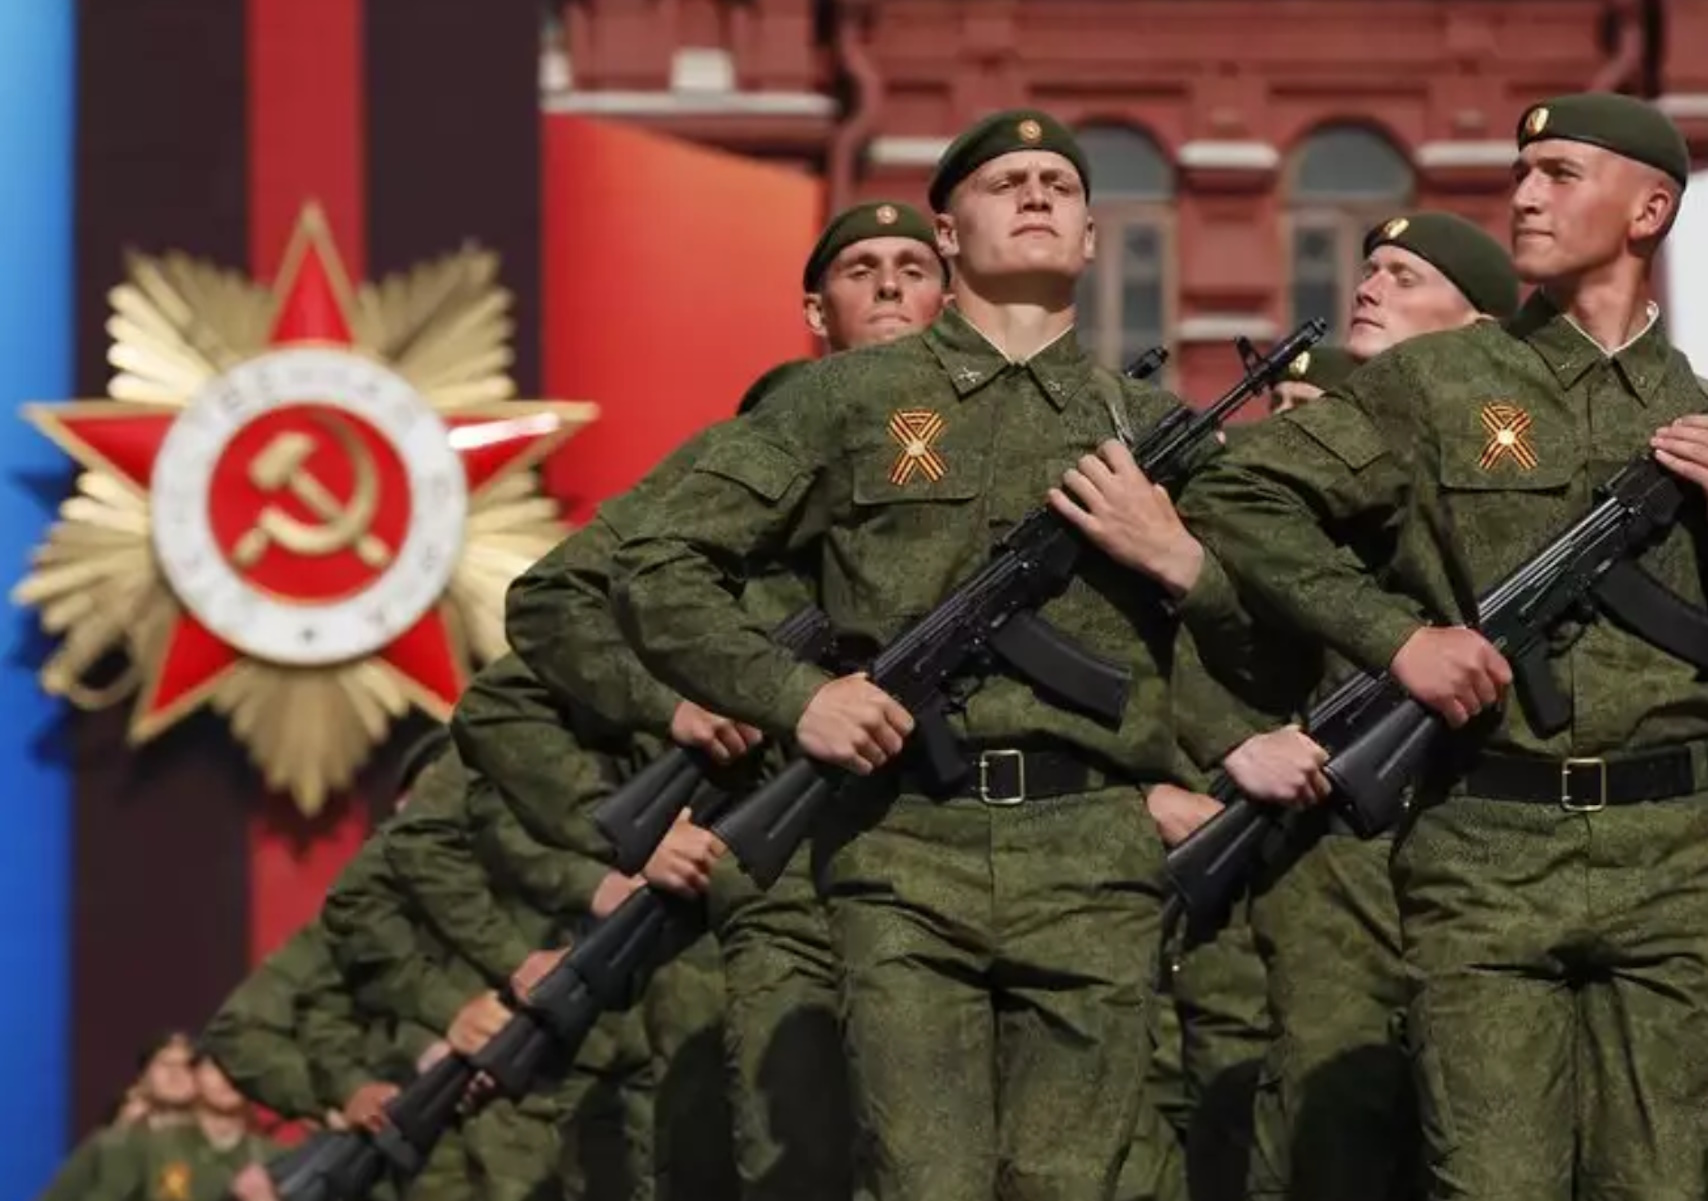 Η Ρωσία θα είναι έτοιμη να επιτεθεί σε χώρα του ΝΑΤΟ σε 5 χρόνια, εκτιμά ο αρχηγός των Γερμανικών Ενόπλων Δυνάμεων